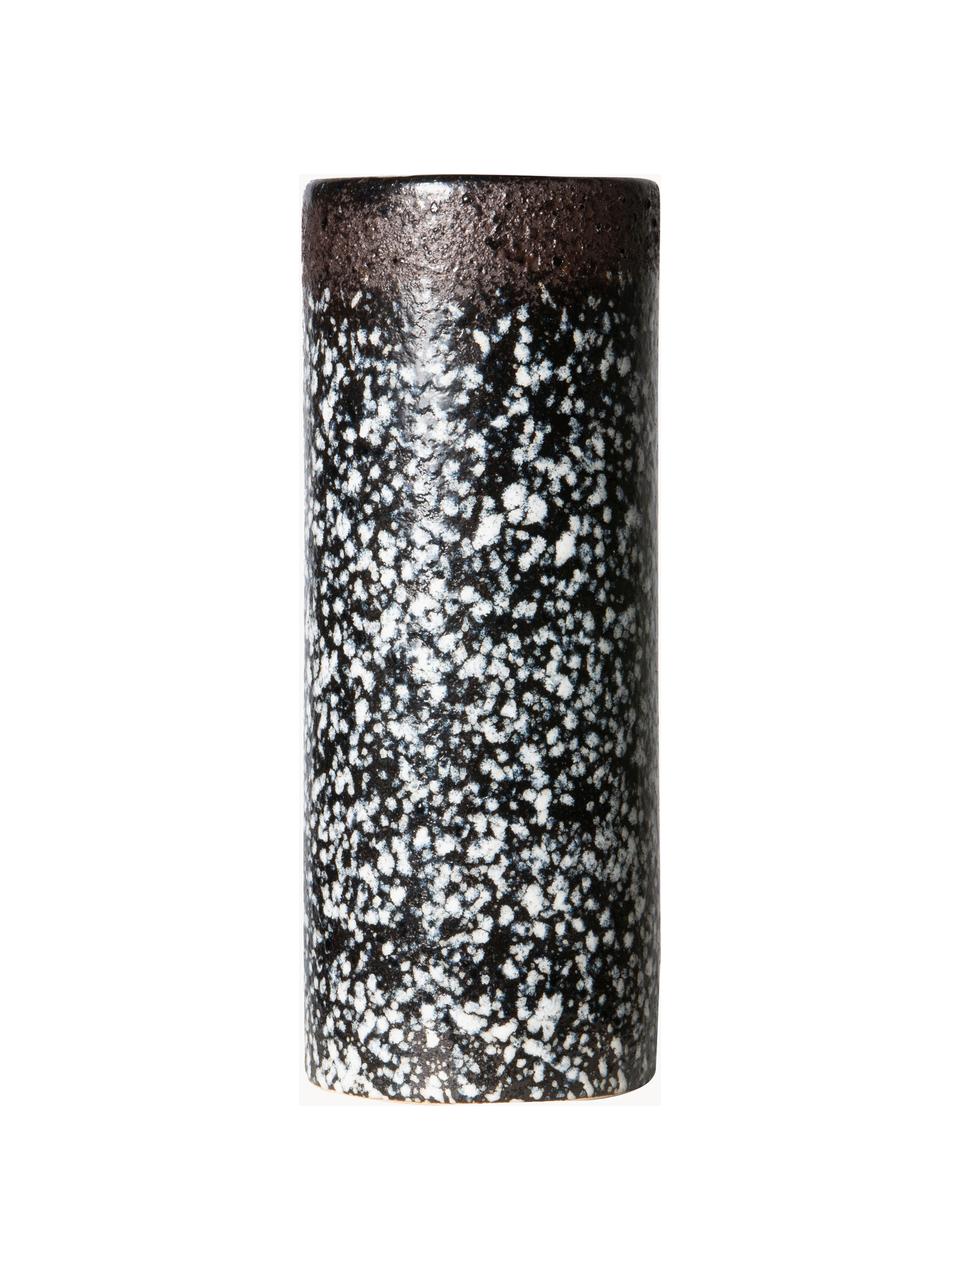 Ručně malovaná keramická váza s reaktivní glazurou 70s, Keramika, Černá, bílá, Ø 8 cm, V 19 cm